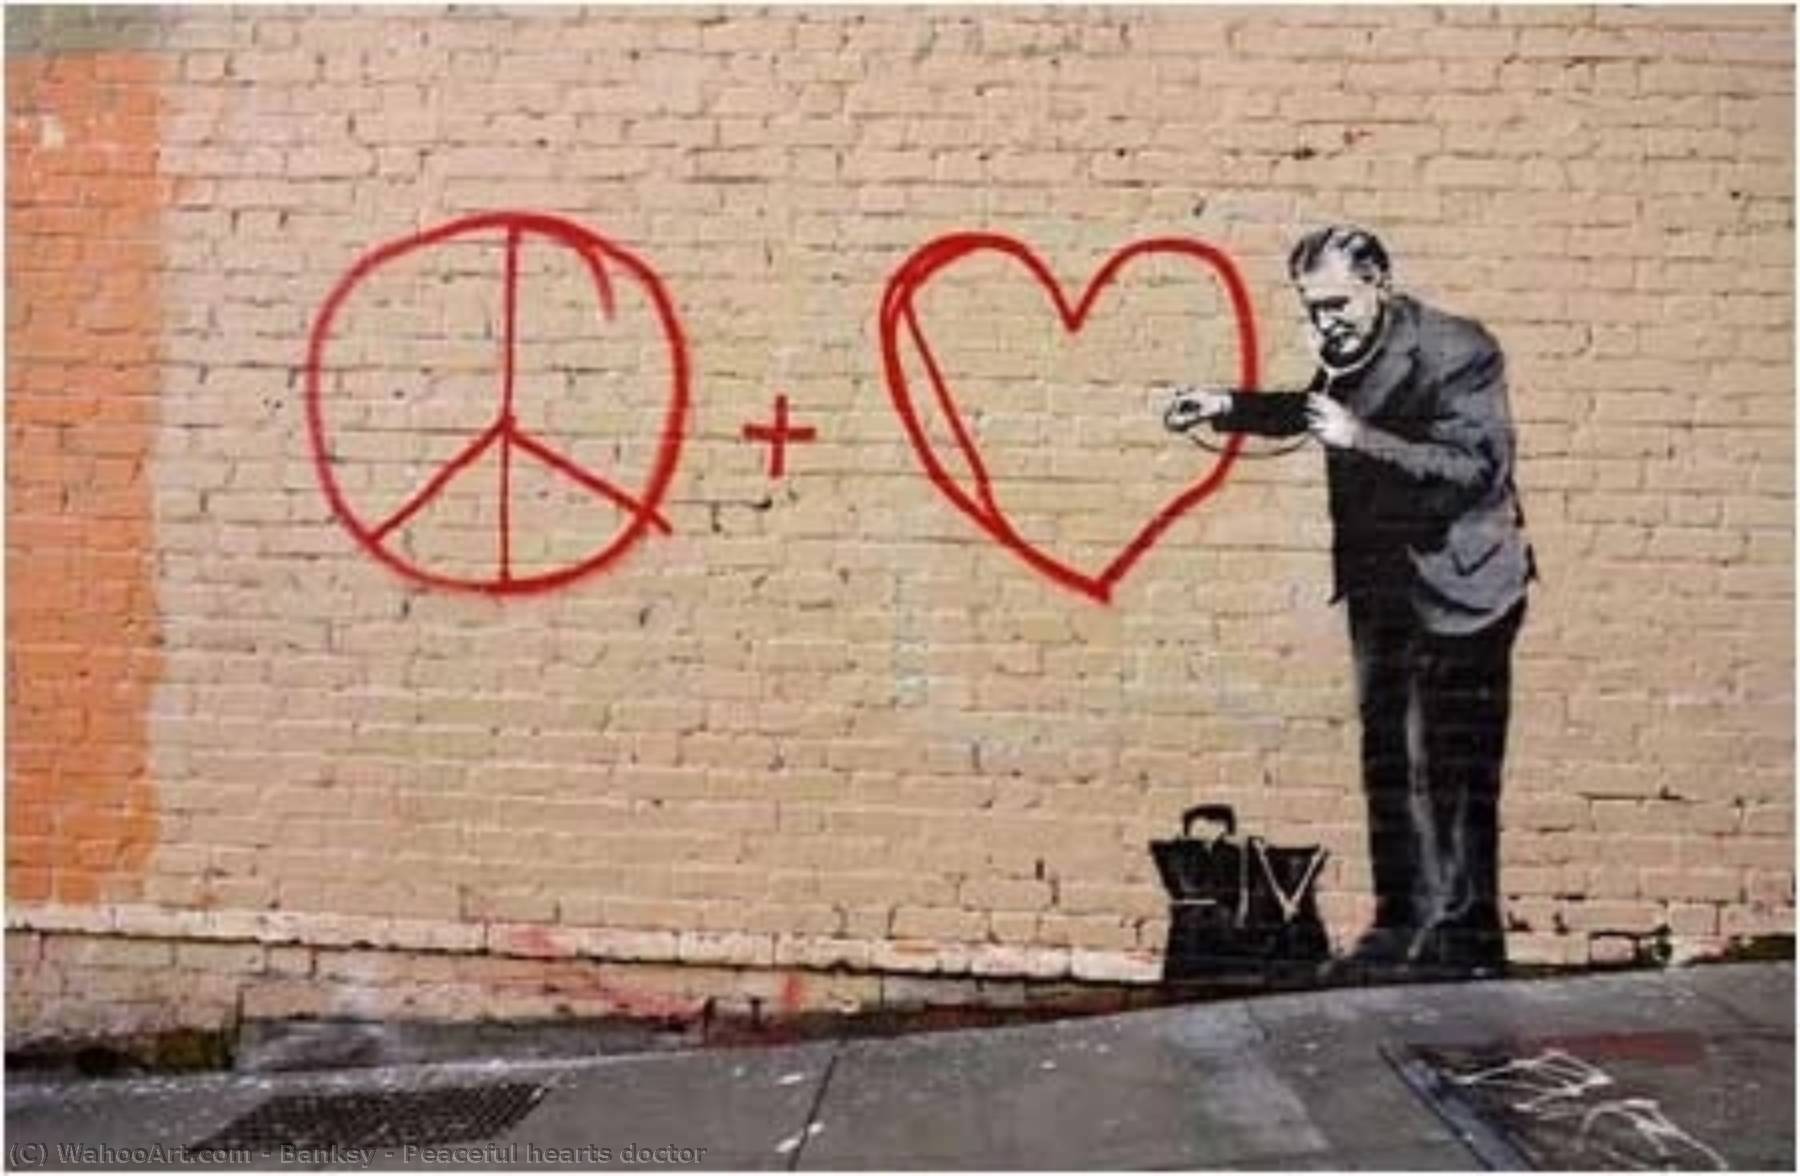 WikiOO.org - Εγκυκλοπαίδεια Καλών Τεχνών - Ζωγραφική, έργα τέχνης Banksy - Peaceful hearts doctor